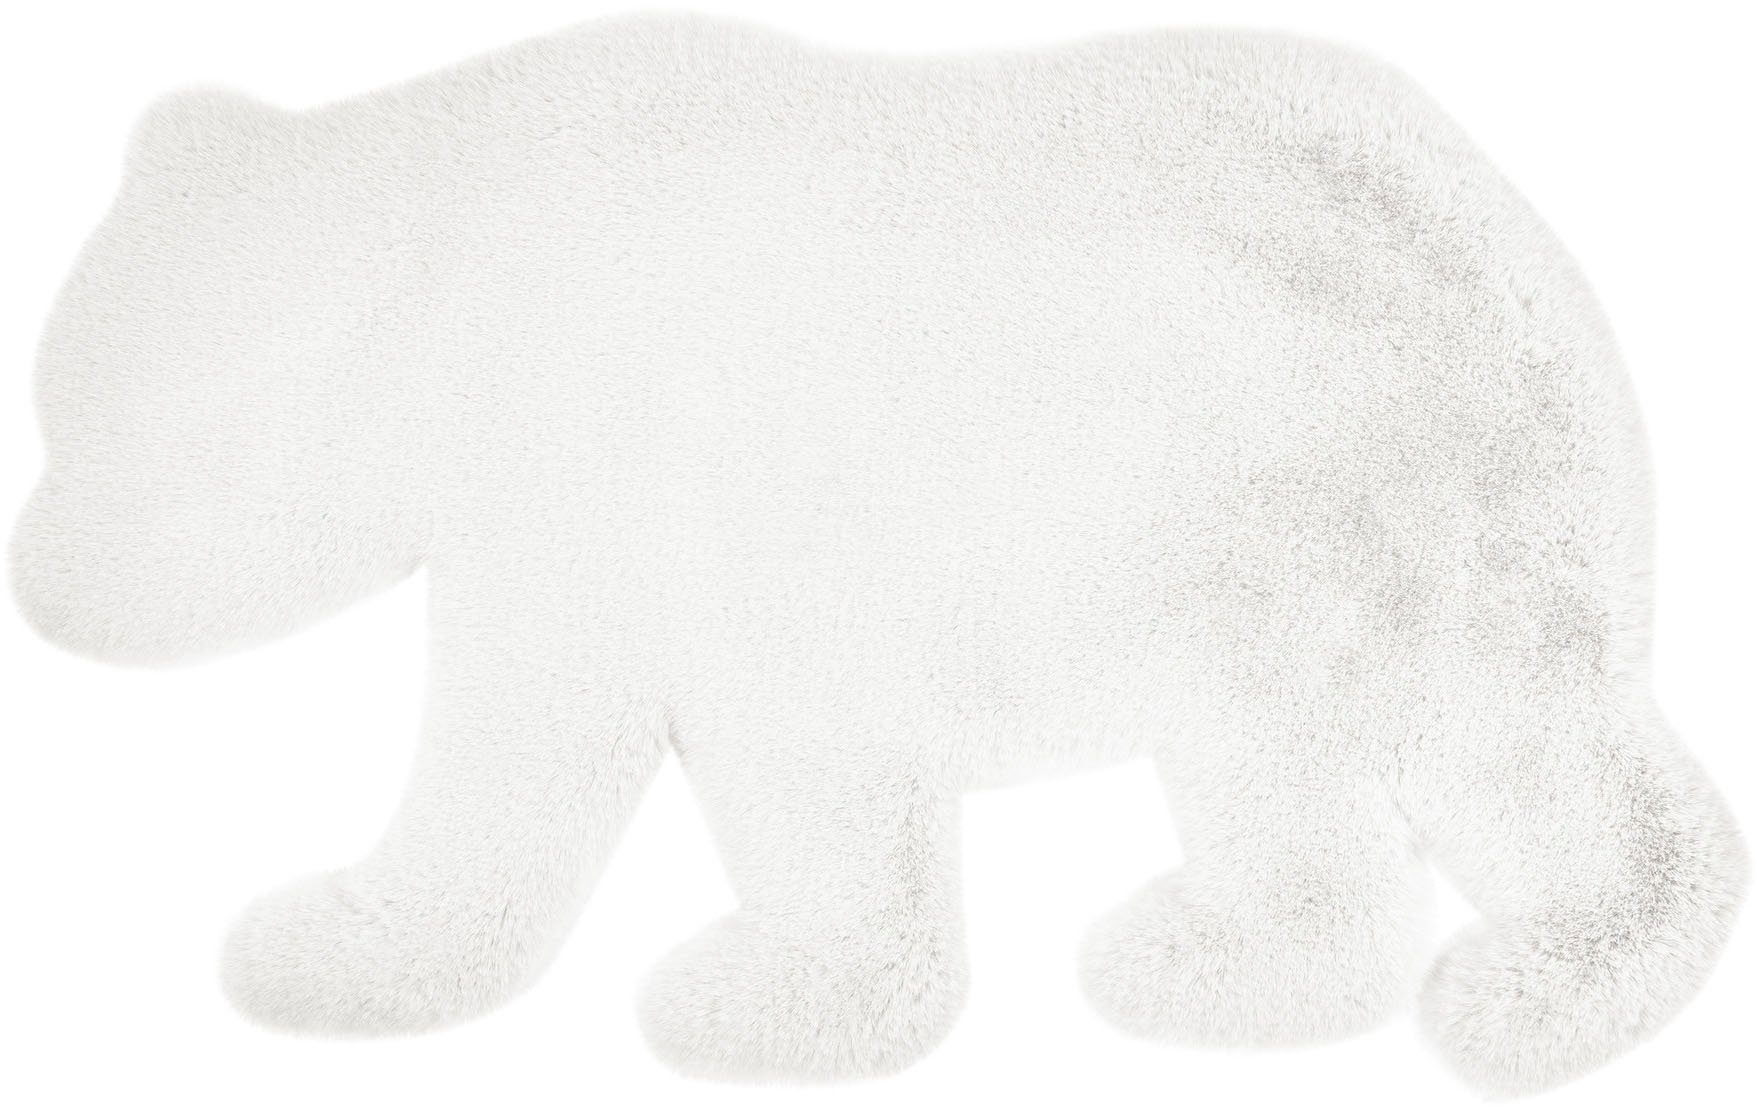 Kinderteppich Bär Tier Weiß Verschied Farben Flauschig Weich Kinderzimmer 